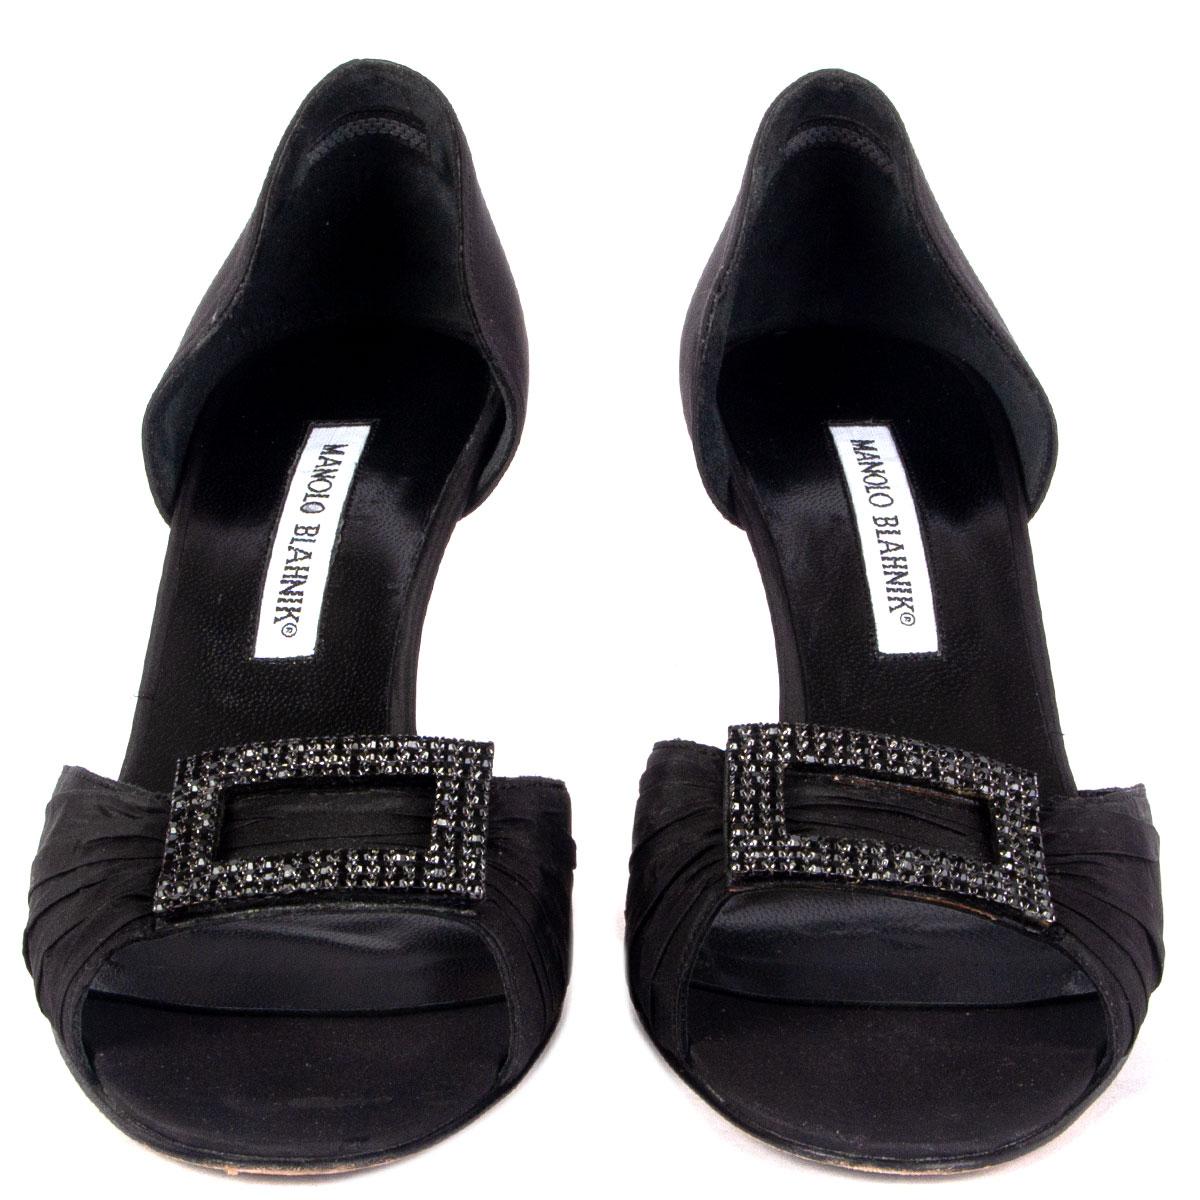 100% authentische Manolo Blahnik Sandalen aus schwarzer Seide, verziert mit Strassschnalle. Sie wurden getragen und sind in einem ausgezeichneten Zustand. 

Messungen
Aufgedruckte Größe	38
Schuhgröße	38
Innensohle	25cm (9.8in)
Breite	7.5cm